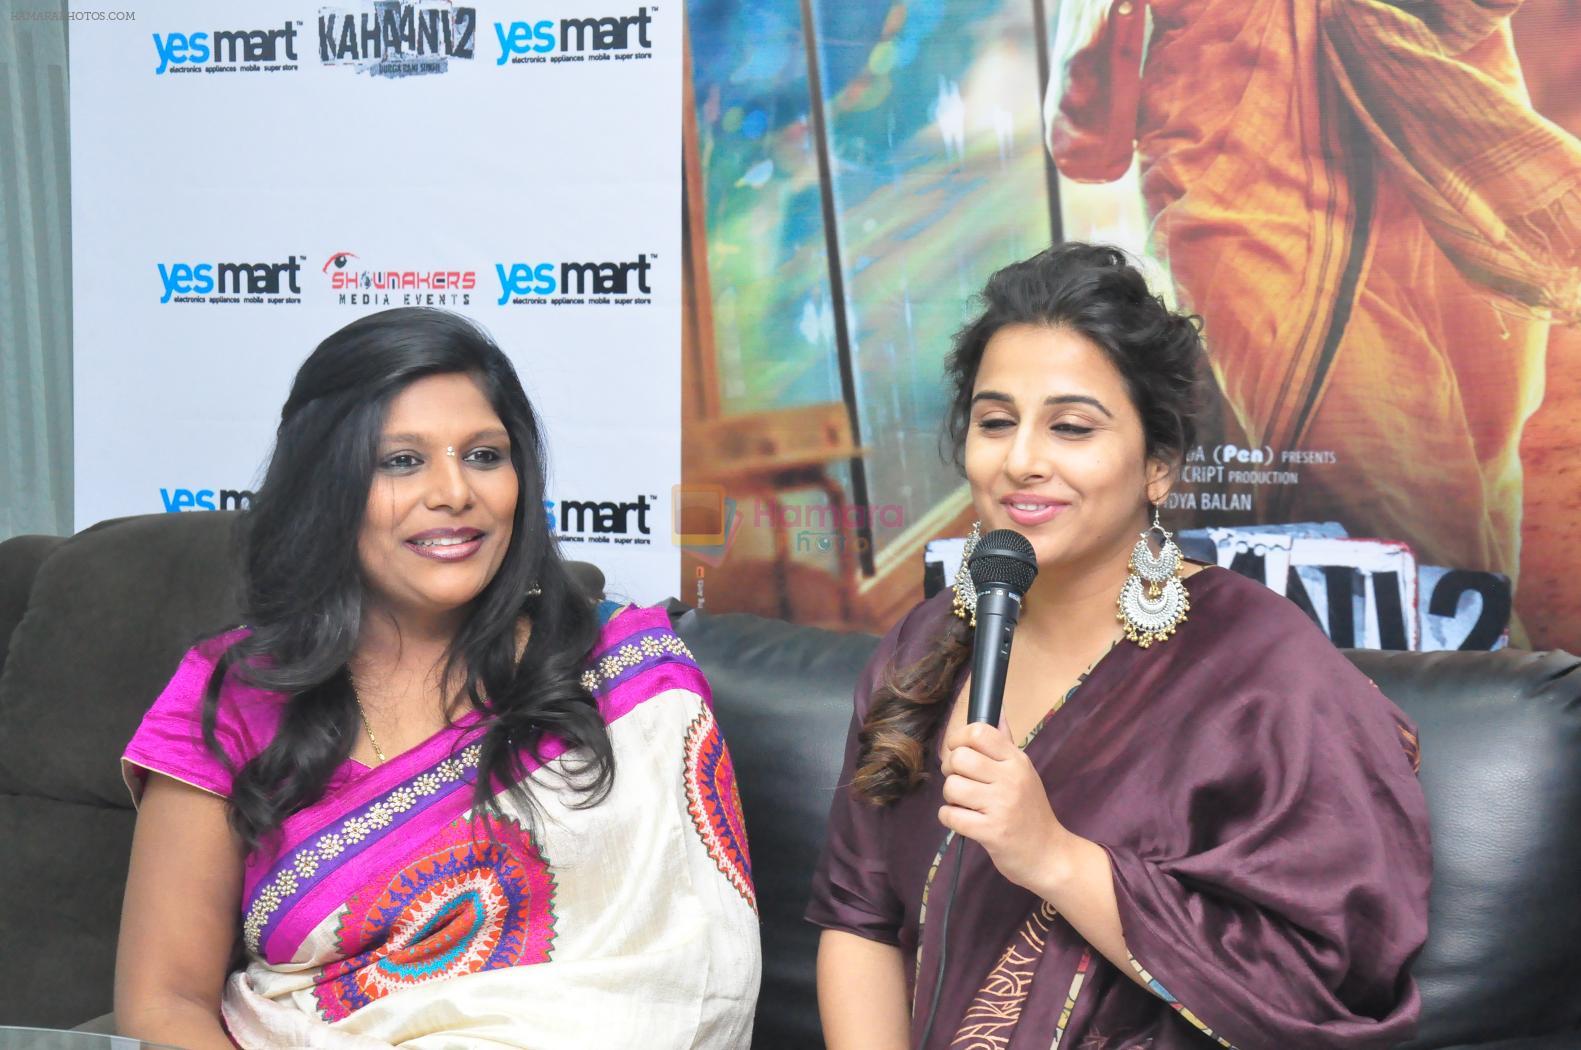 Vidya balan at  Kahaani 2 Movie Promotion in Yesmart on 23rd Nov 2016